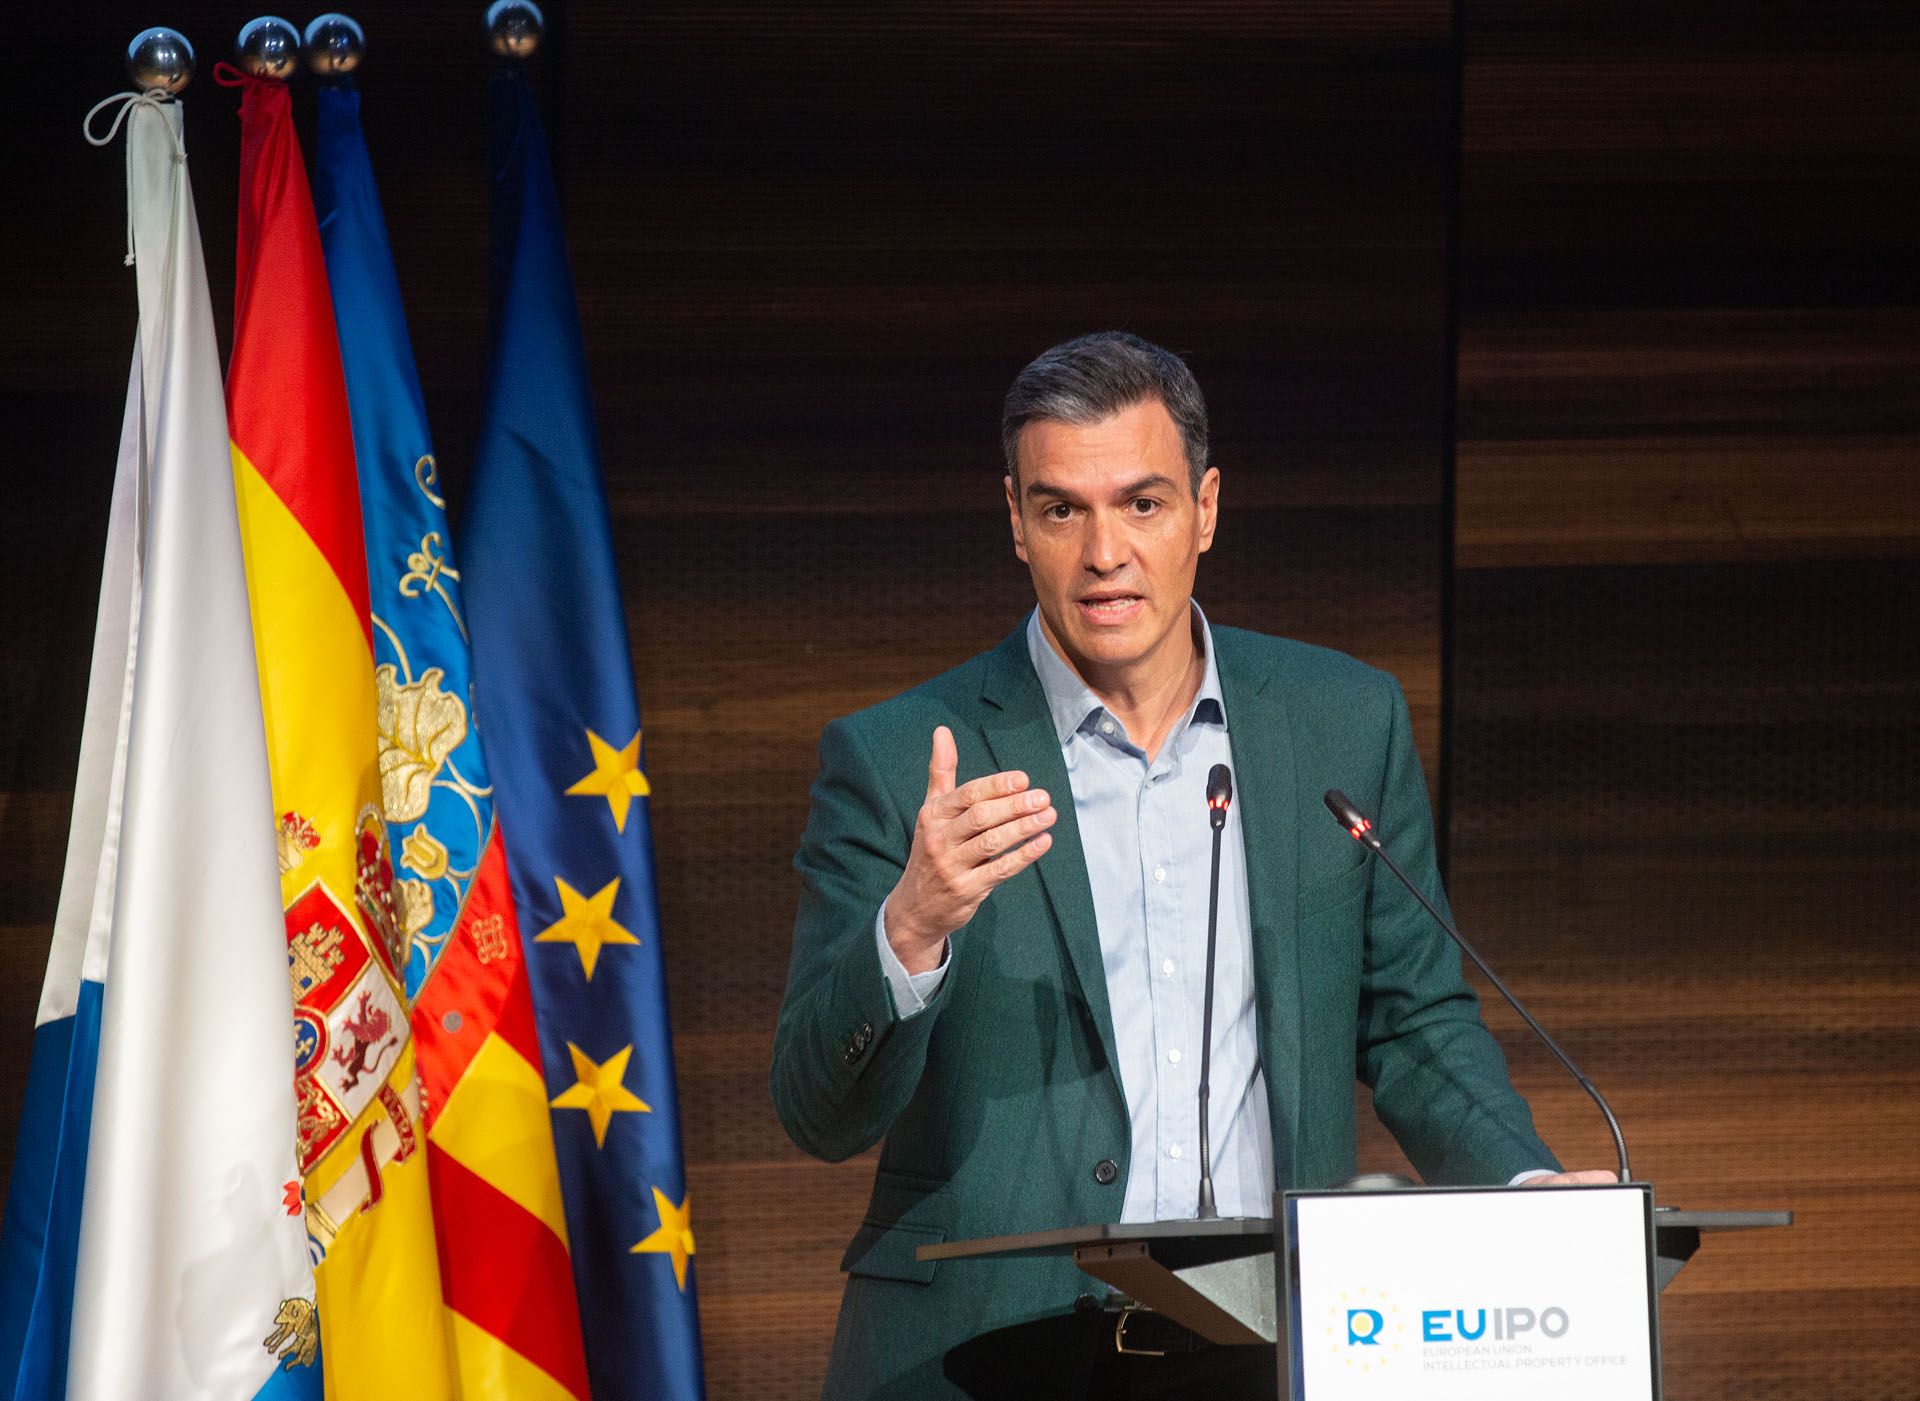 Pedro Sánchez presenta en Alicante el plan de apoyo a los jóvenes para el acceso a la vivienda